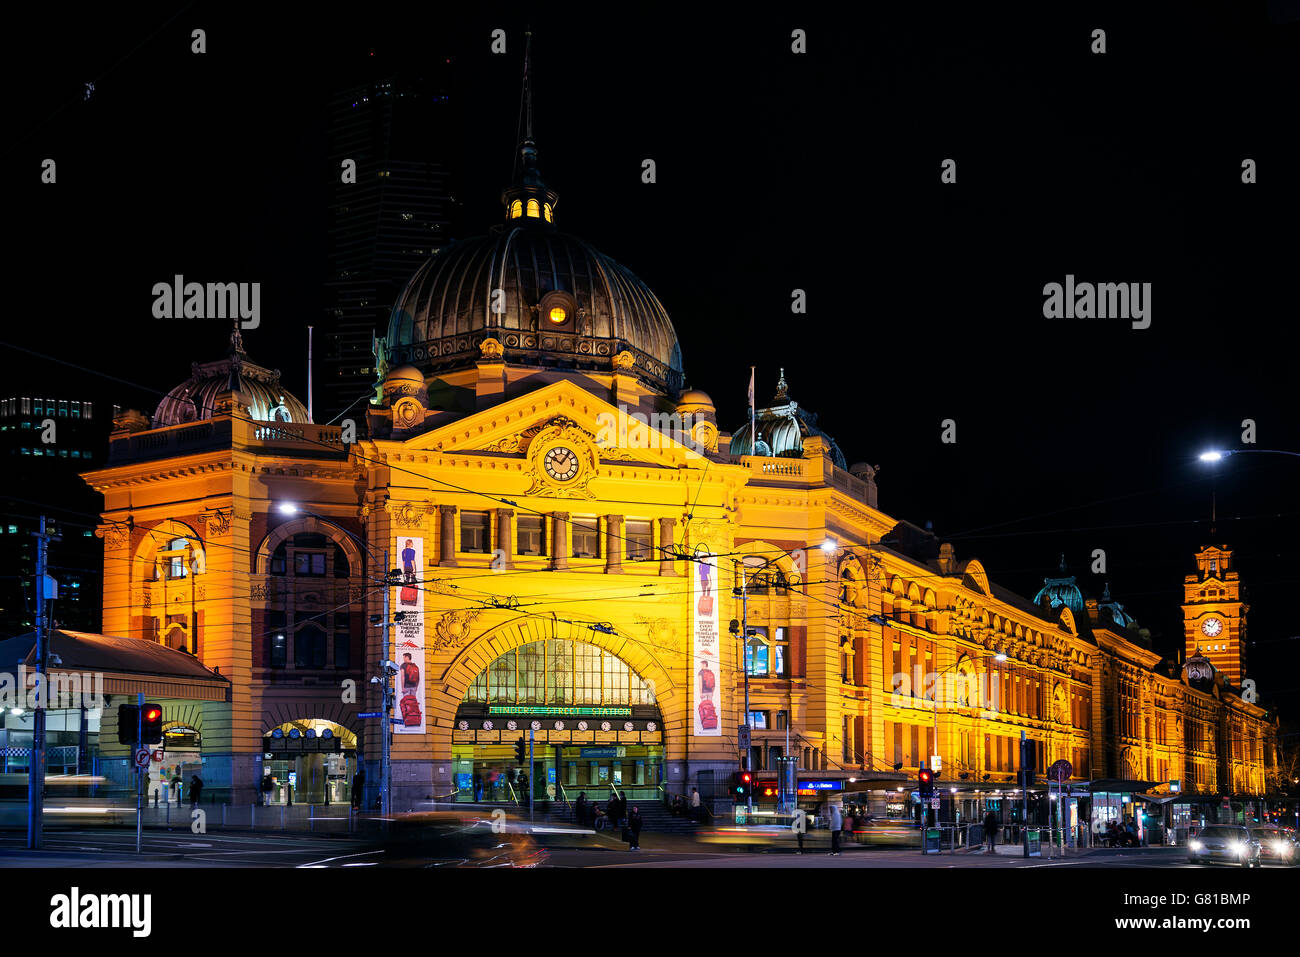 La gare de Flinders Street dans le centre-ville de Melbourne Australie pendant la nuit Banque D'Images